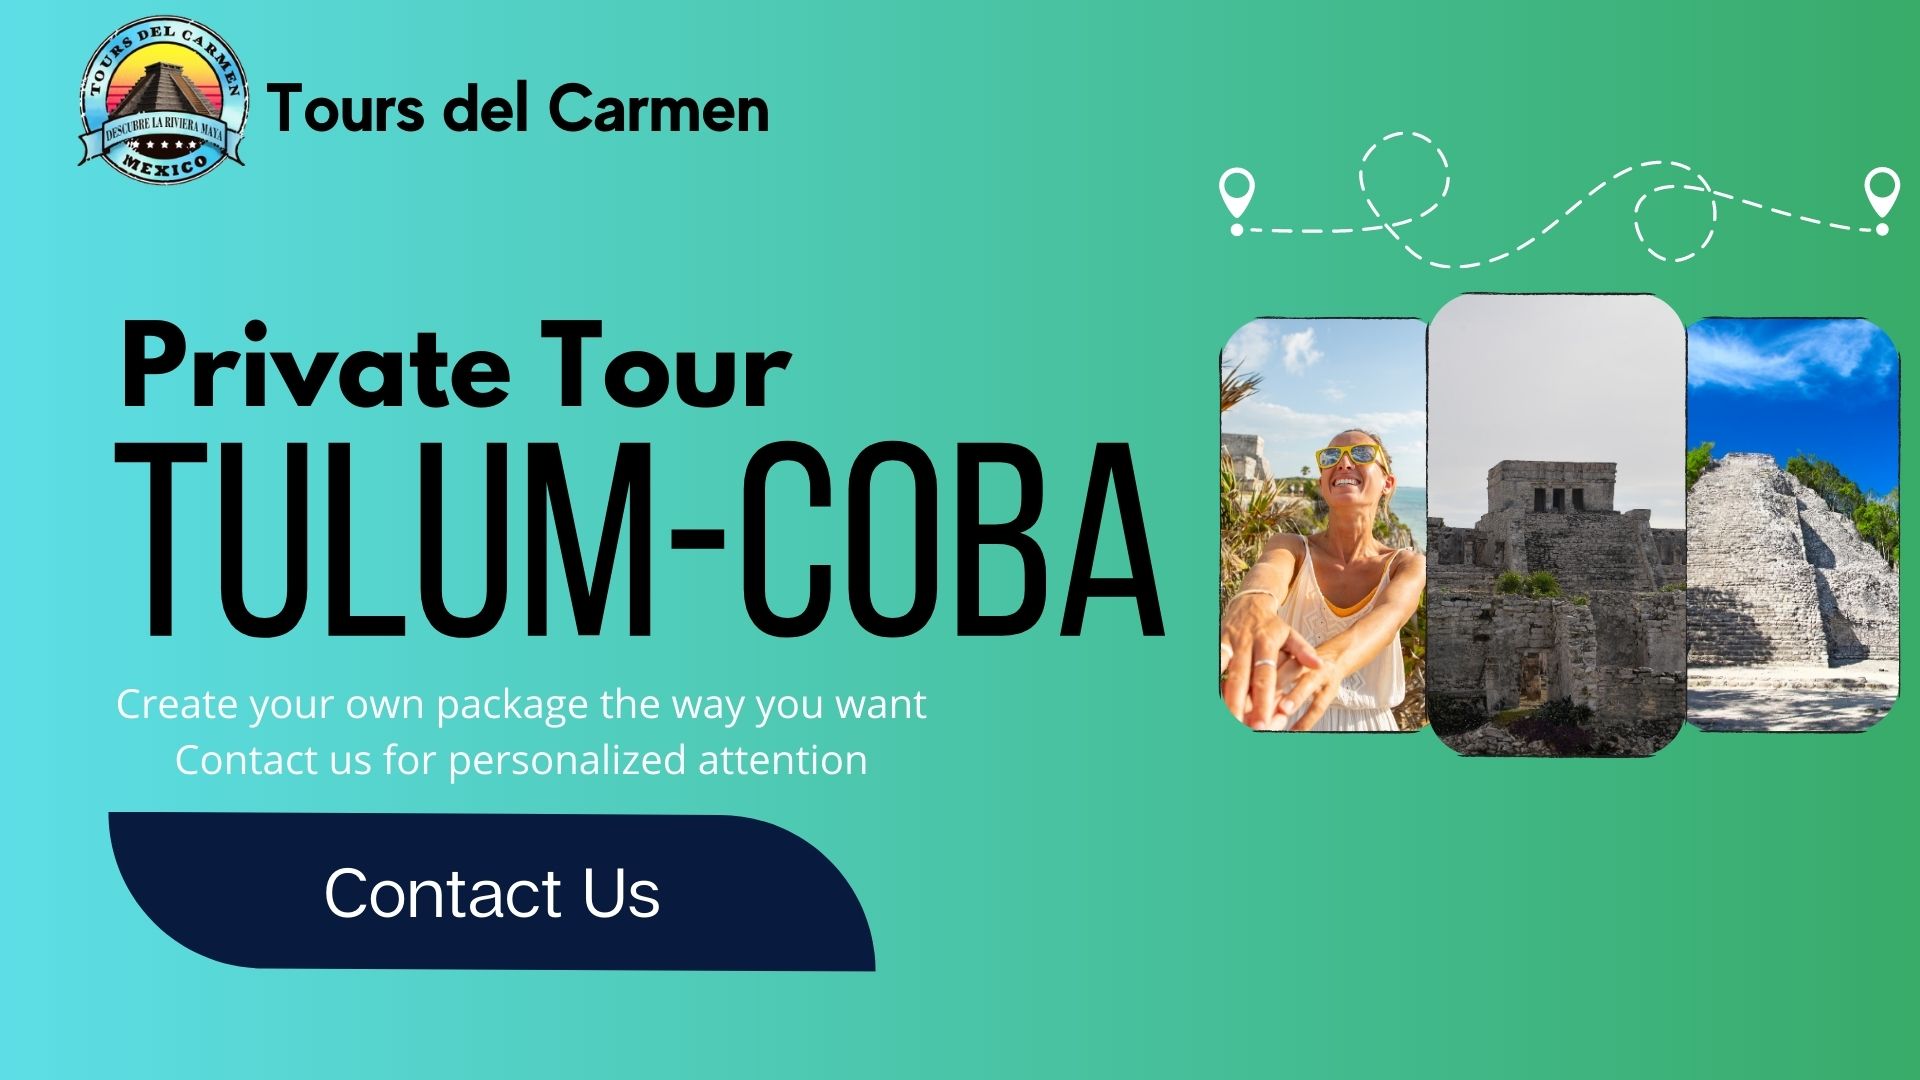 Tulum-Cobá Private Tour